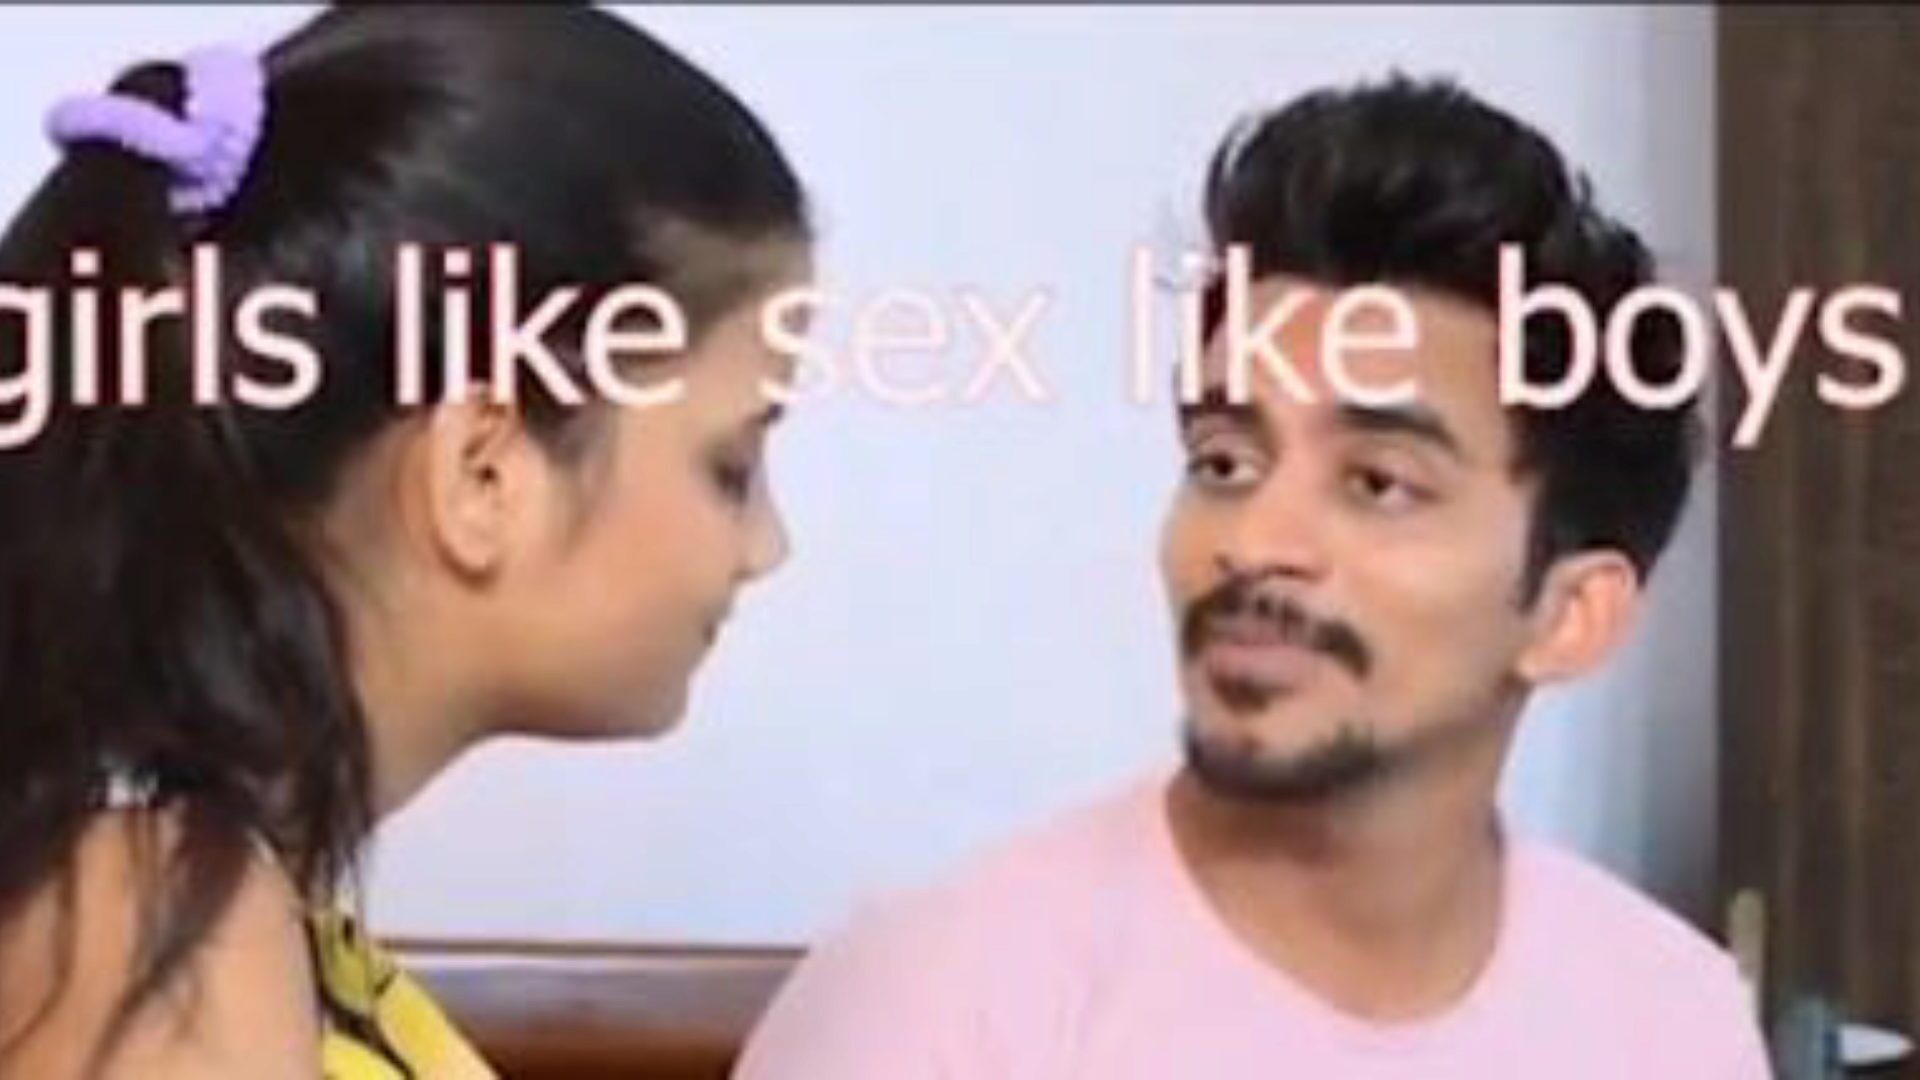 Гар ре AAI гость KE saath секс Hindi аудио: порно 6a смотреть Гар Пе AAI гостя KE saath секс хинди аудио сцену фильм на xhamster - окончательный архив бесплатных азиатских индийских злостных порно ламповых клипов